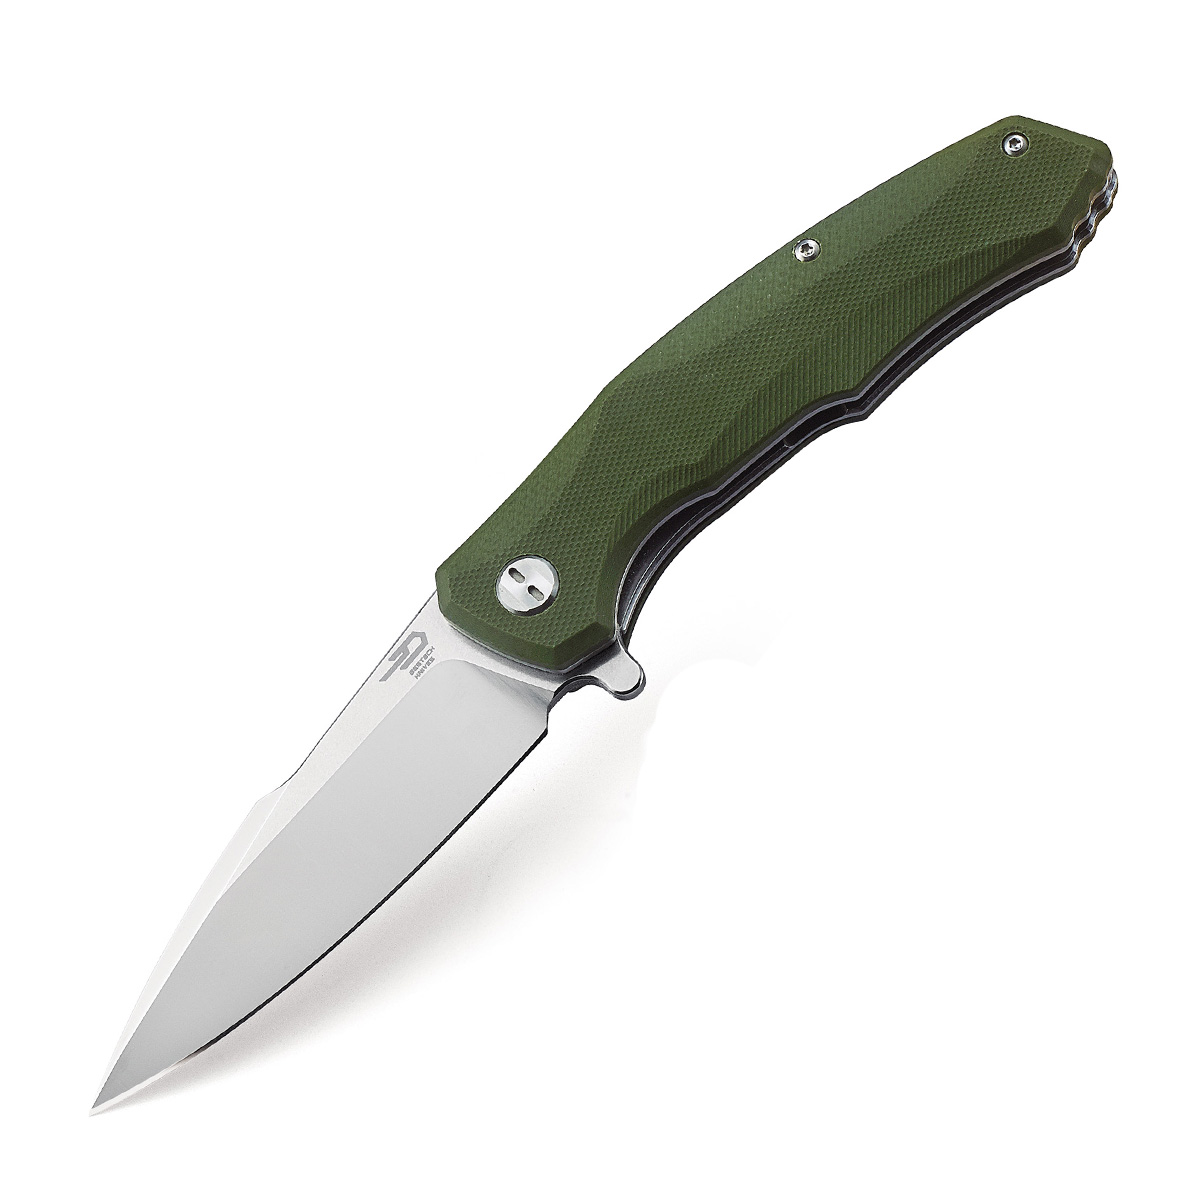 Складной нож Bestech Warwolf, D2 складной нож bestech grampus d2 зеленый